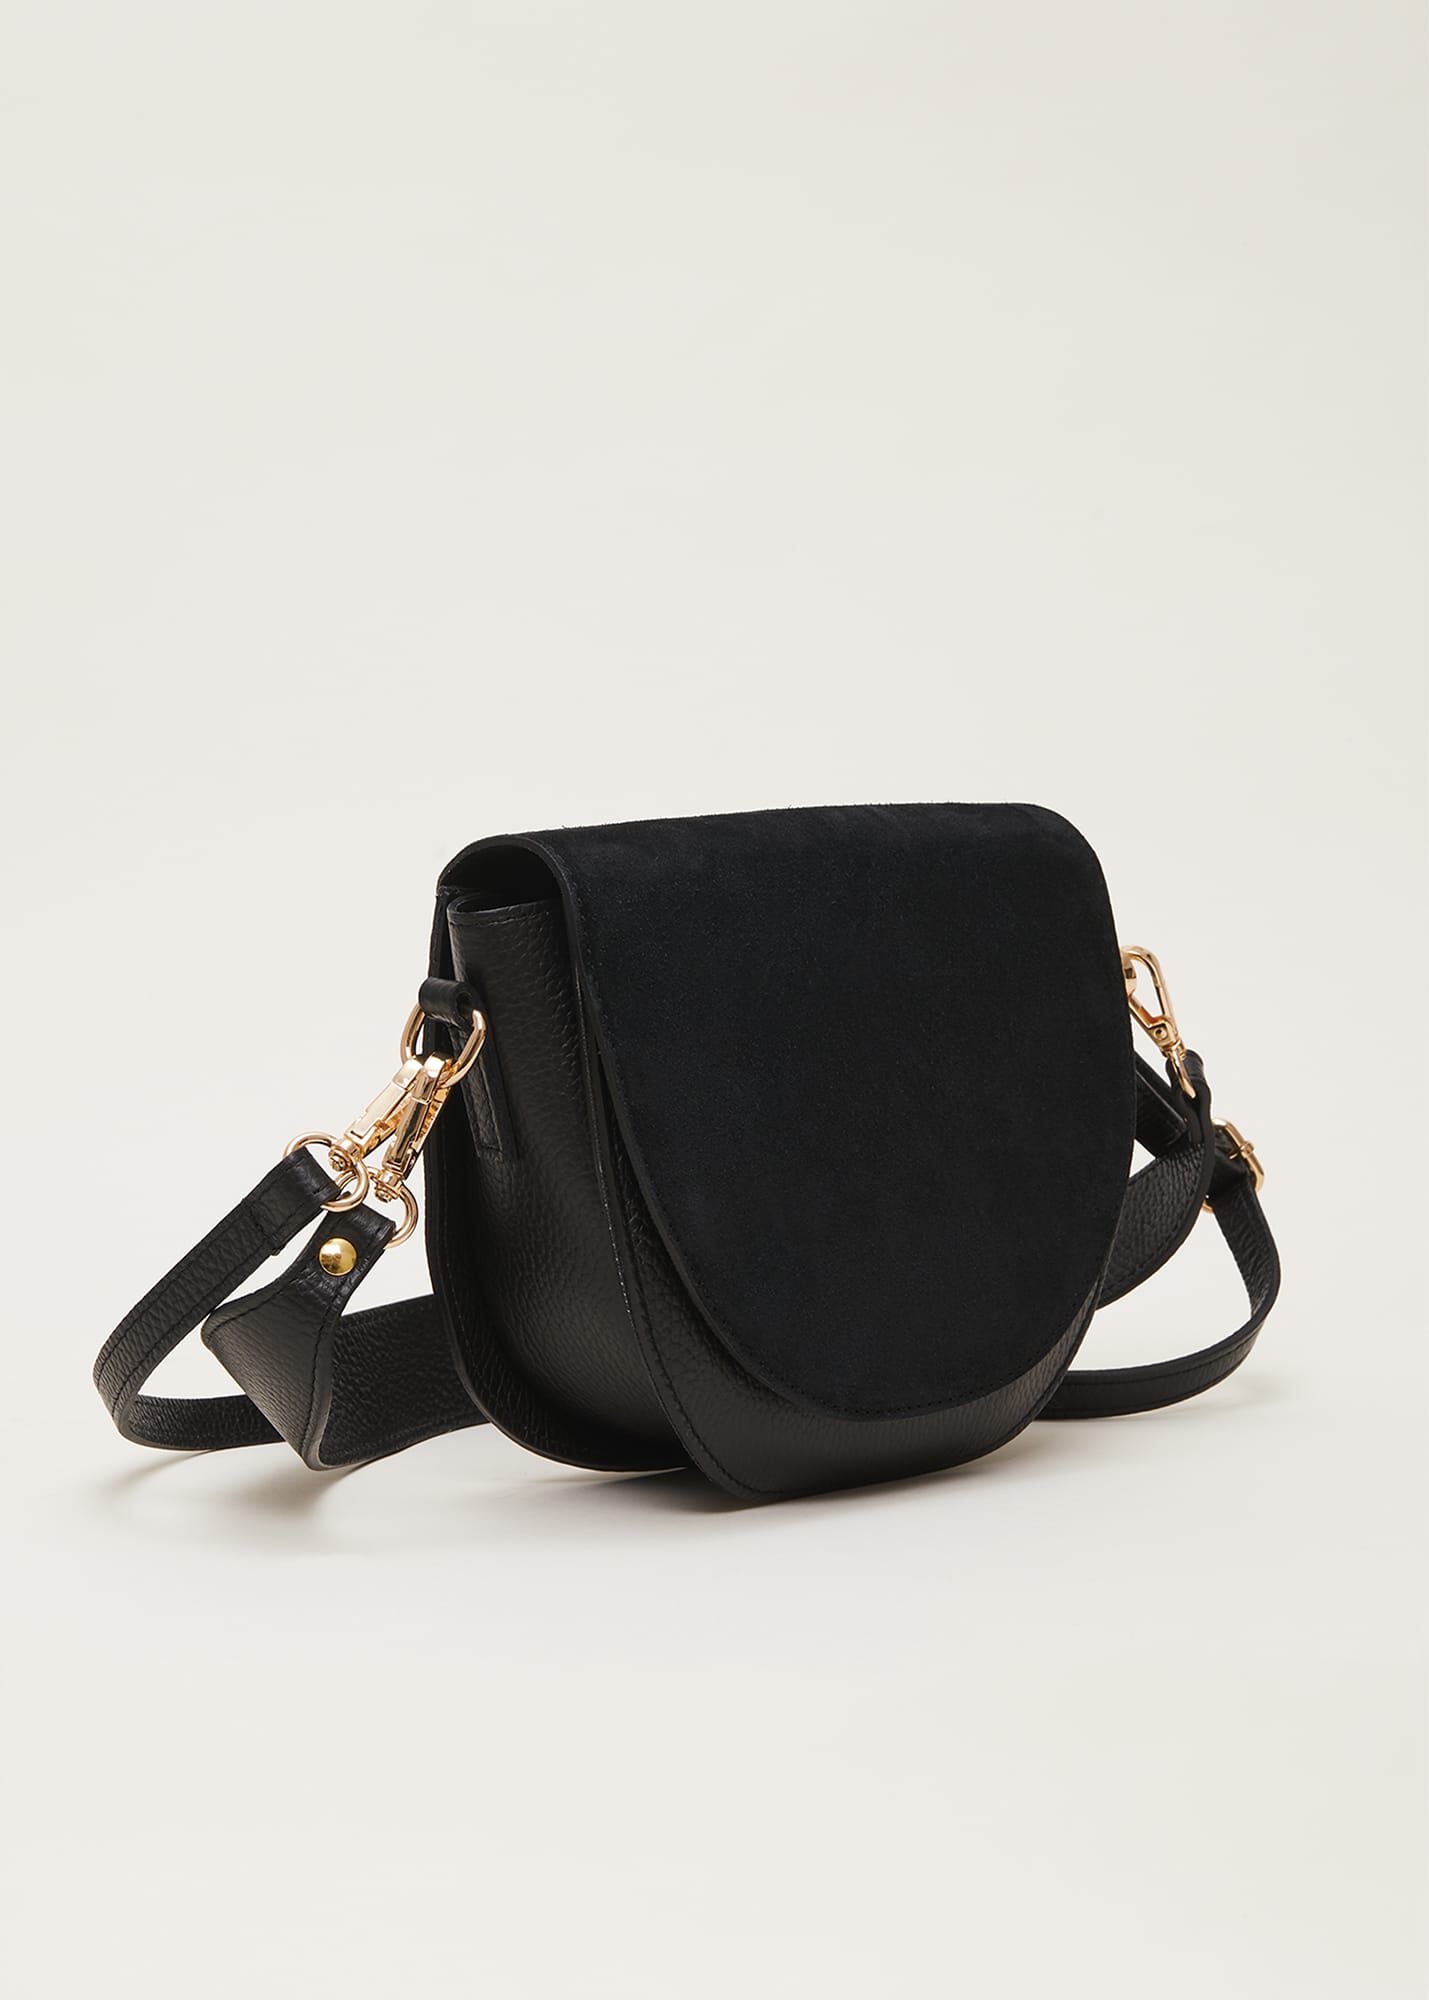 Black suede handbag